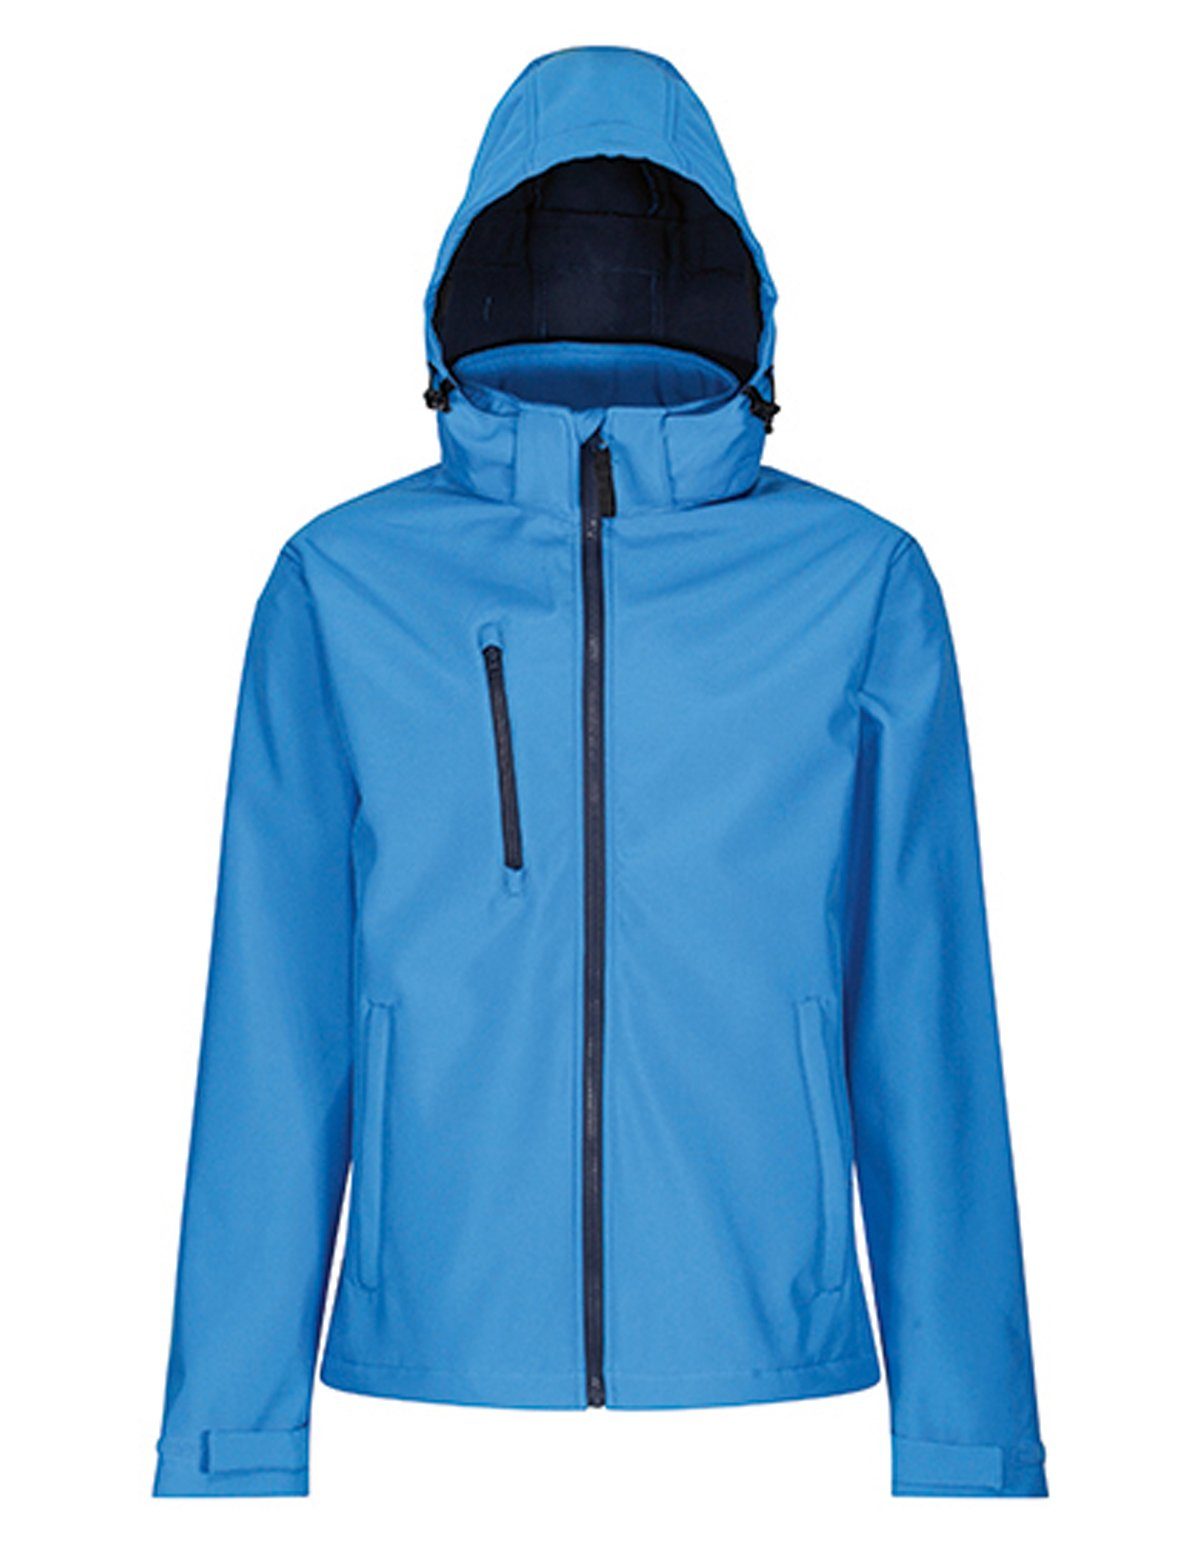 Regatta Professional Softshelljacke Venturer 3-layer Printable Hooded Softshell Jacket RG701 French Blue-Navy